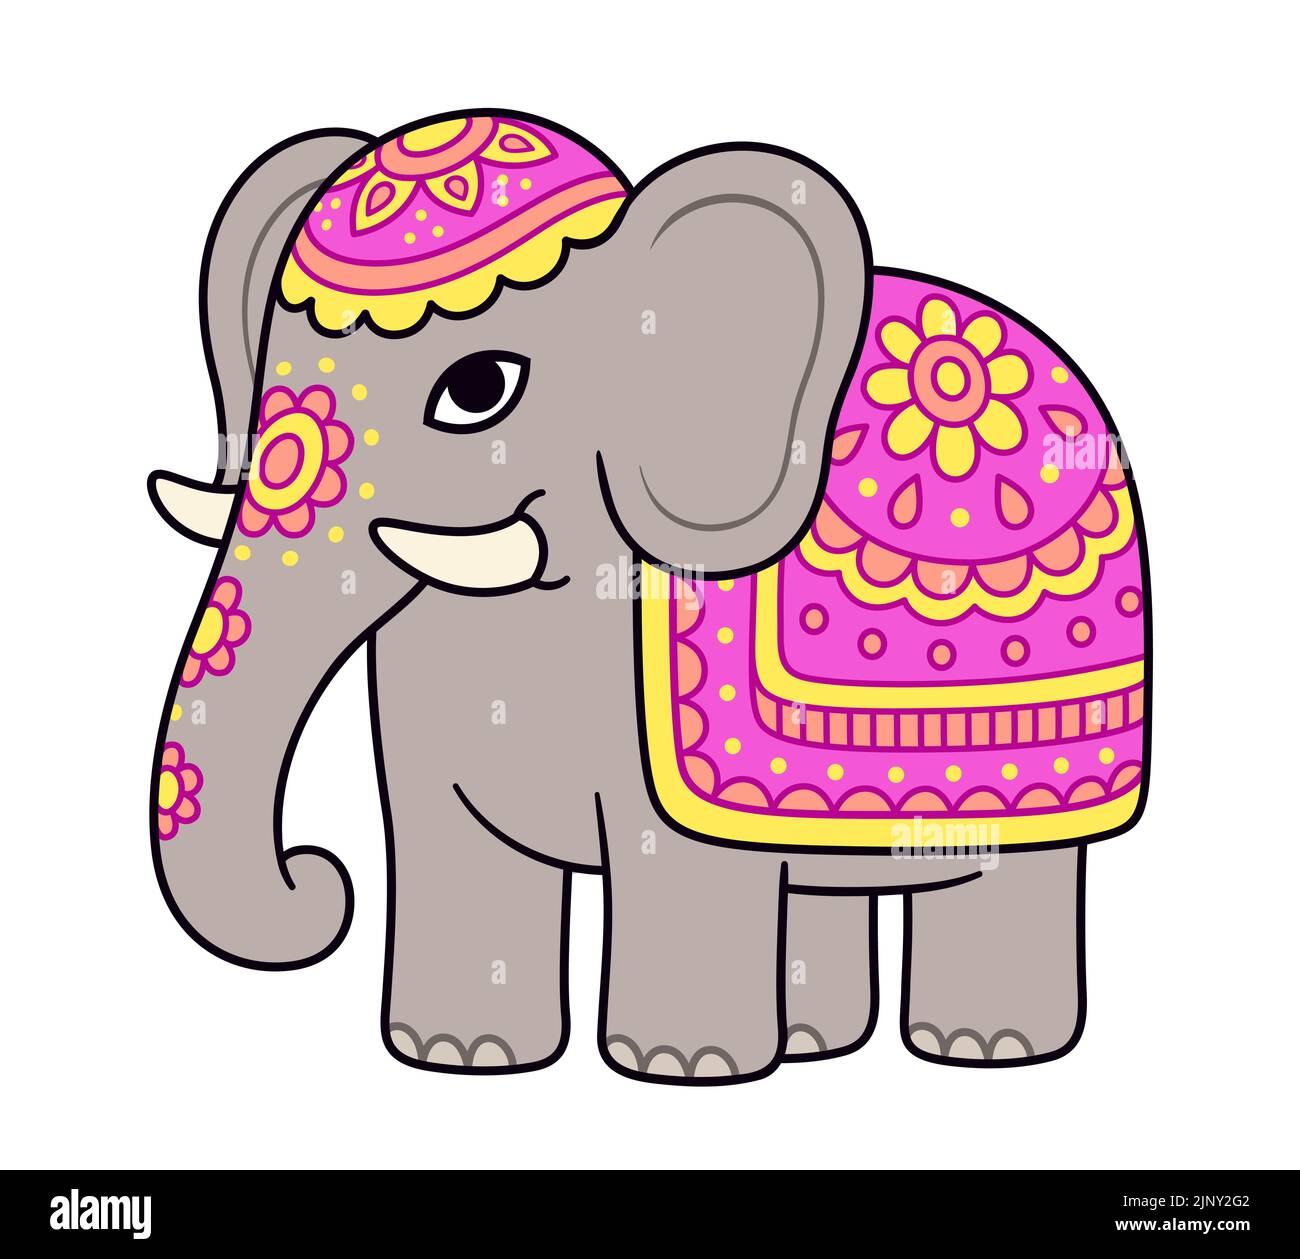 Dibujo de elefante decorado con dibujos animados. Elefante indio con flores pintadas y cubierta de colores. Ilustración vectorial de imágenes prediseñadas. Ilustración del Vector